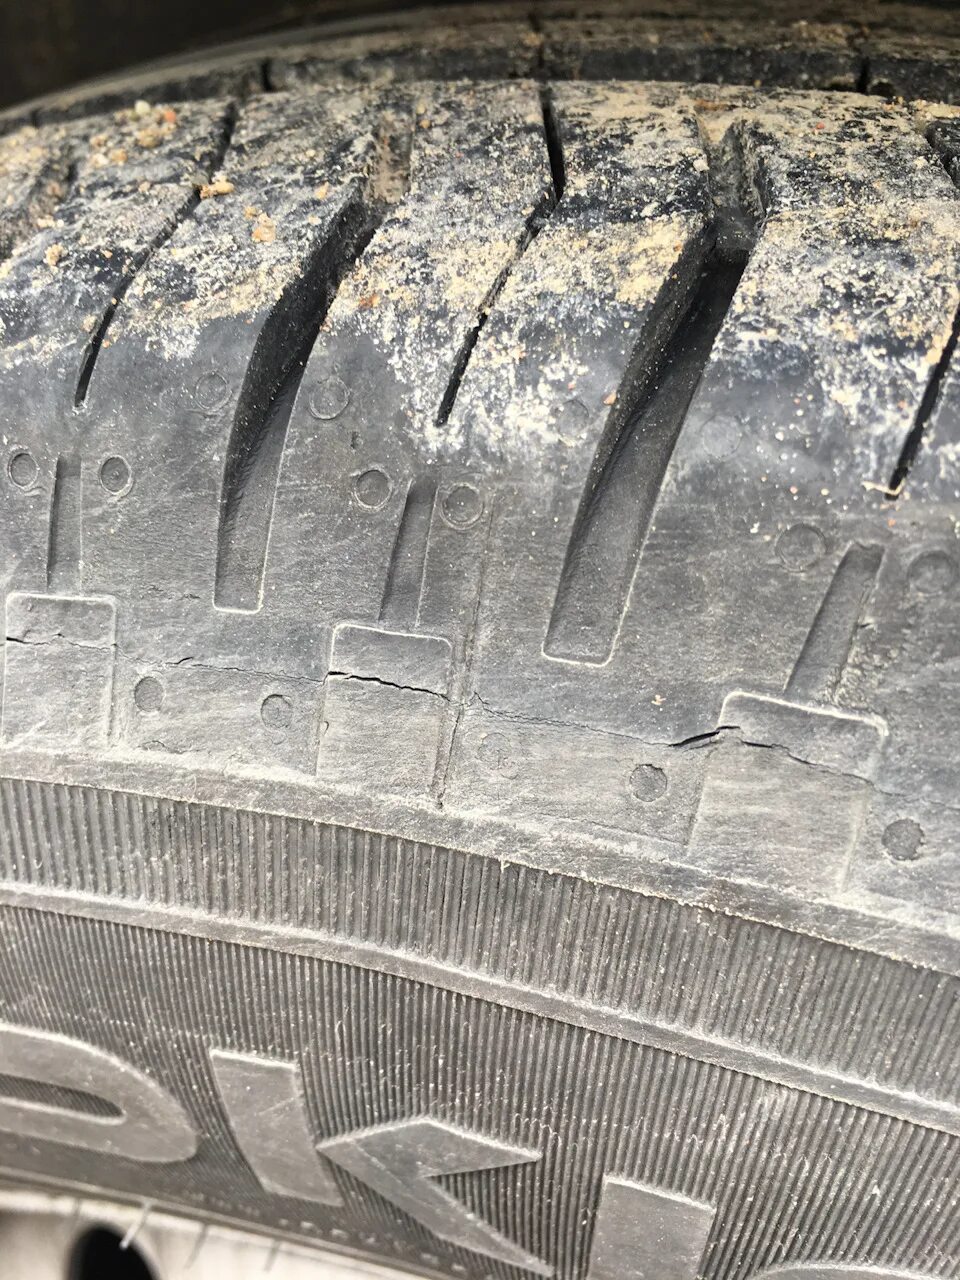 Трещины на шинах